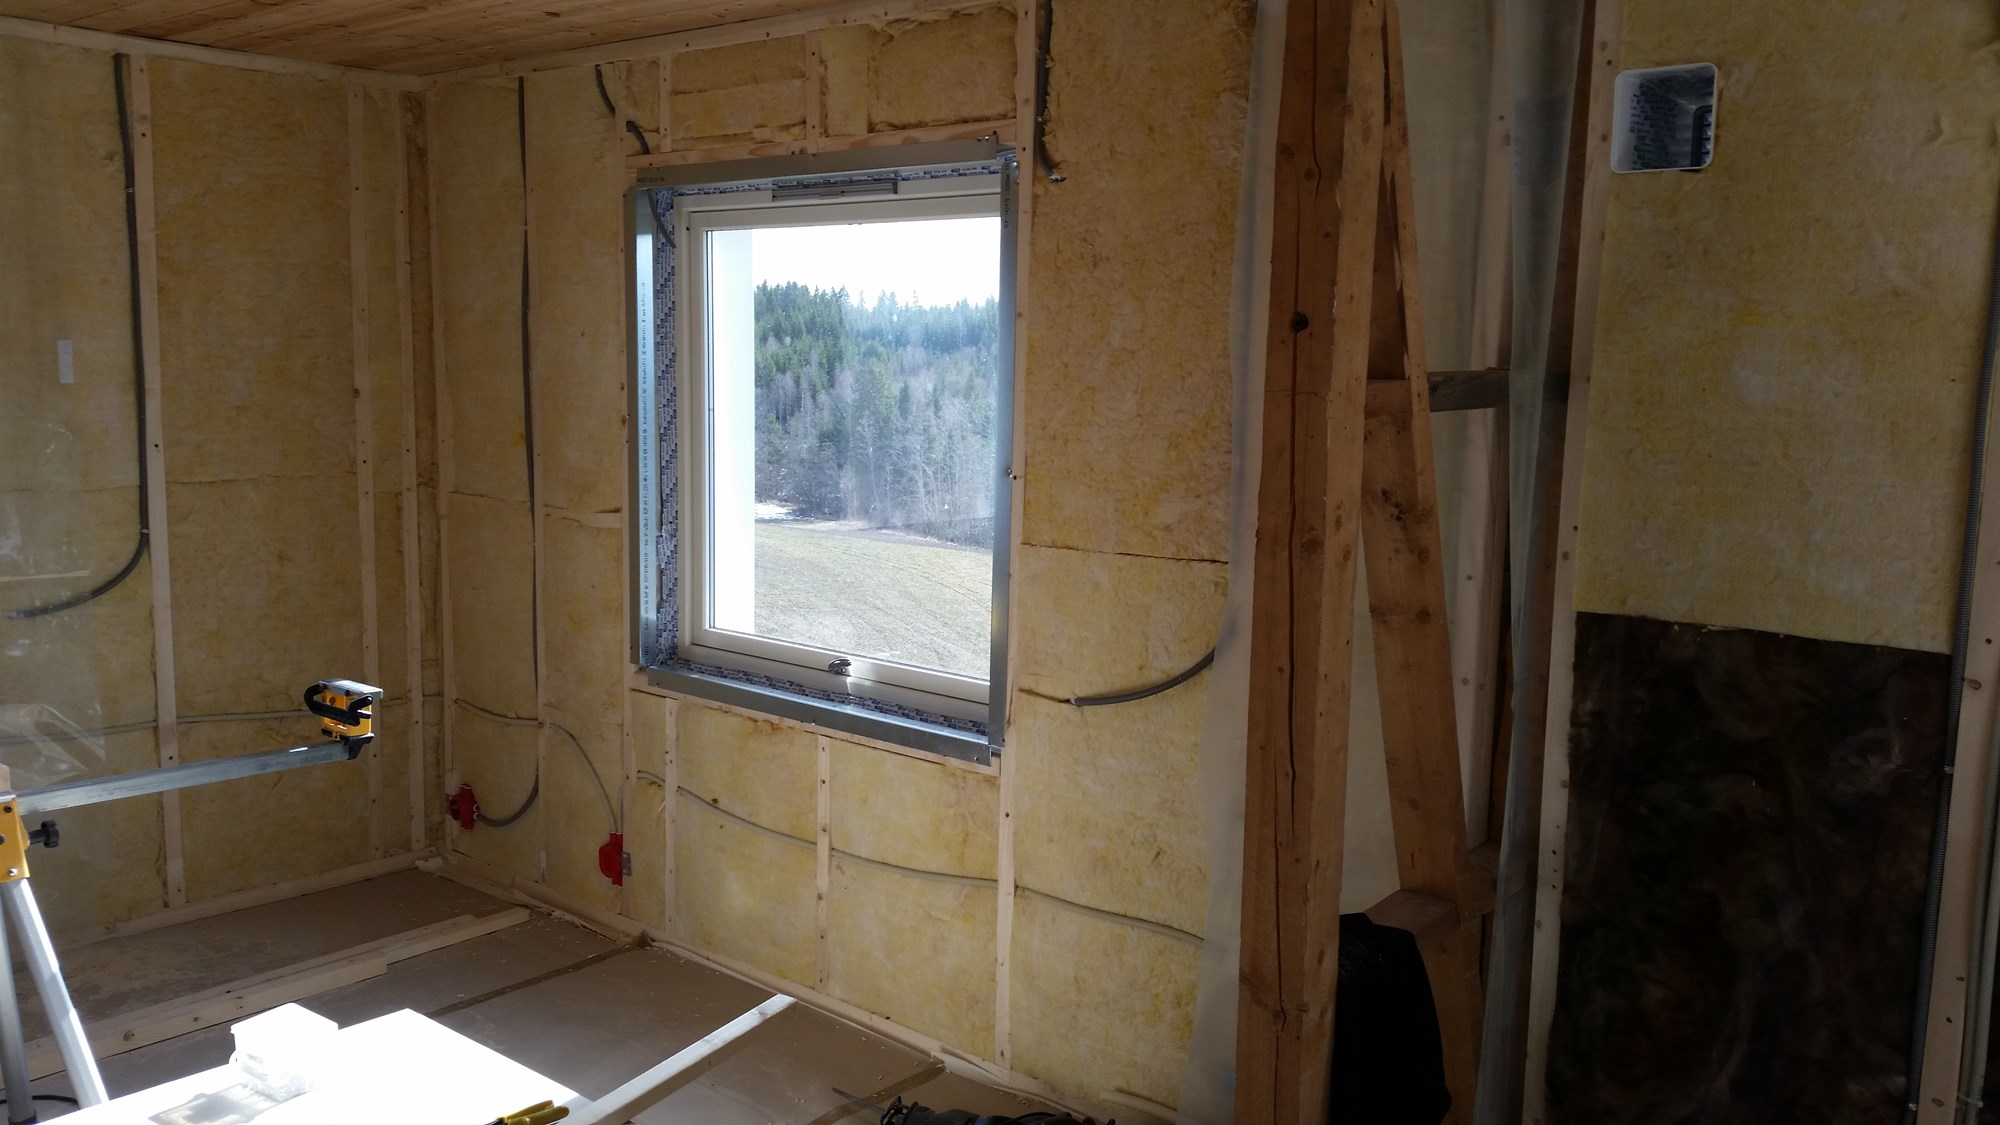 Hvordan få listfrie vinduer i eksisterende bolig? - 2015-04-05 11.36.05.jpg - HR82